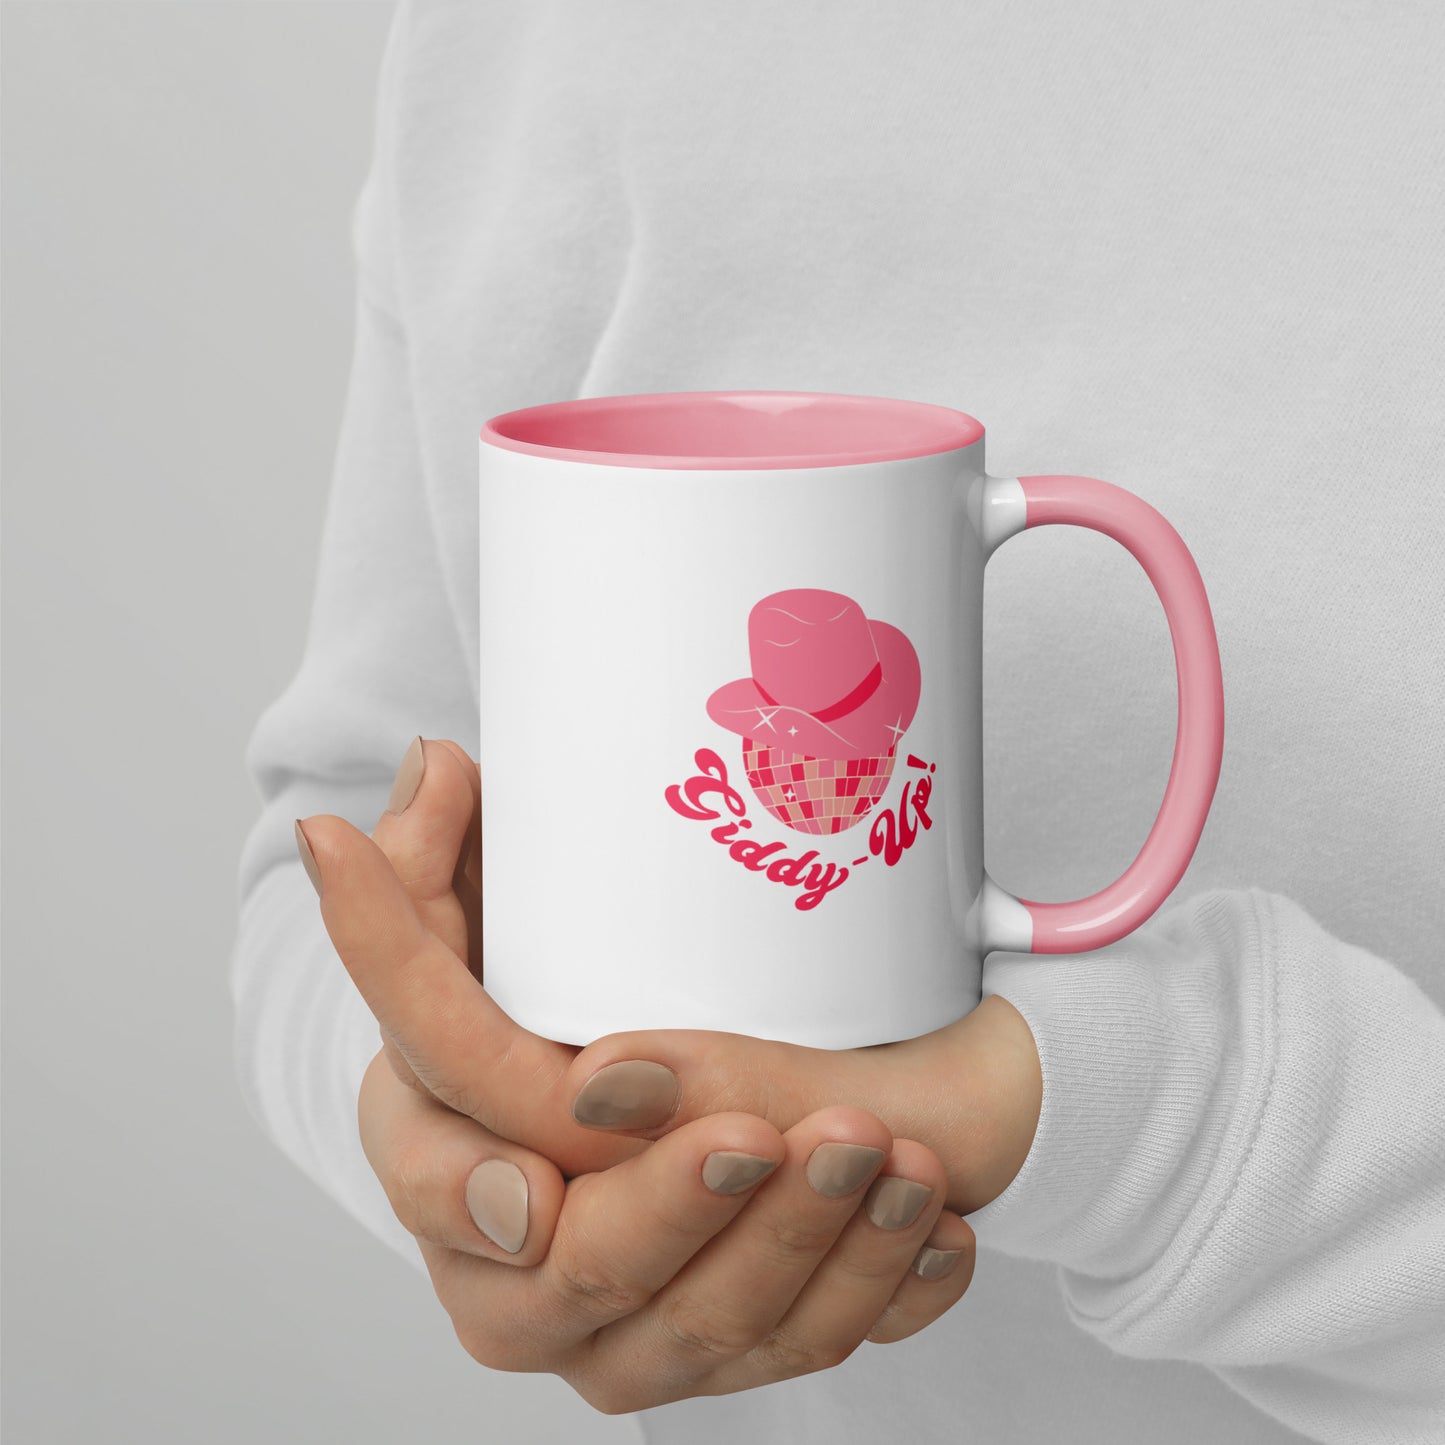 Giddy Up Coffee Mug